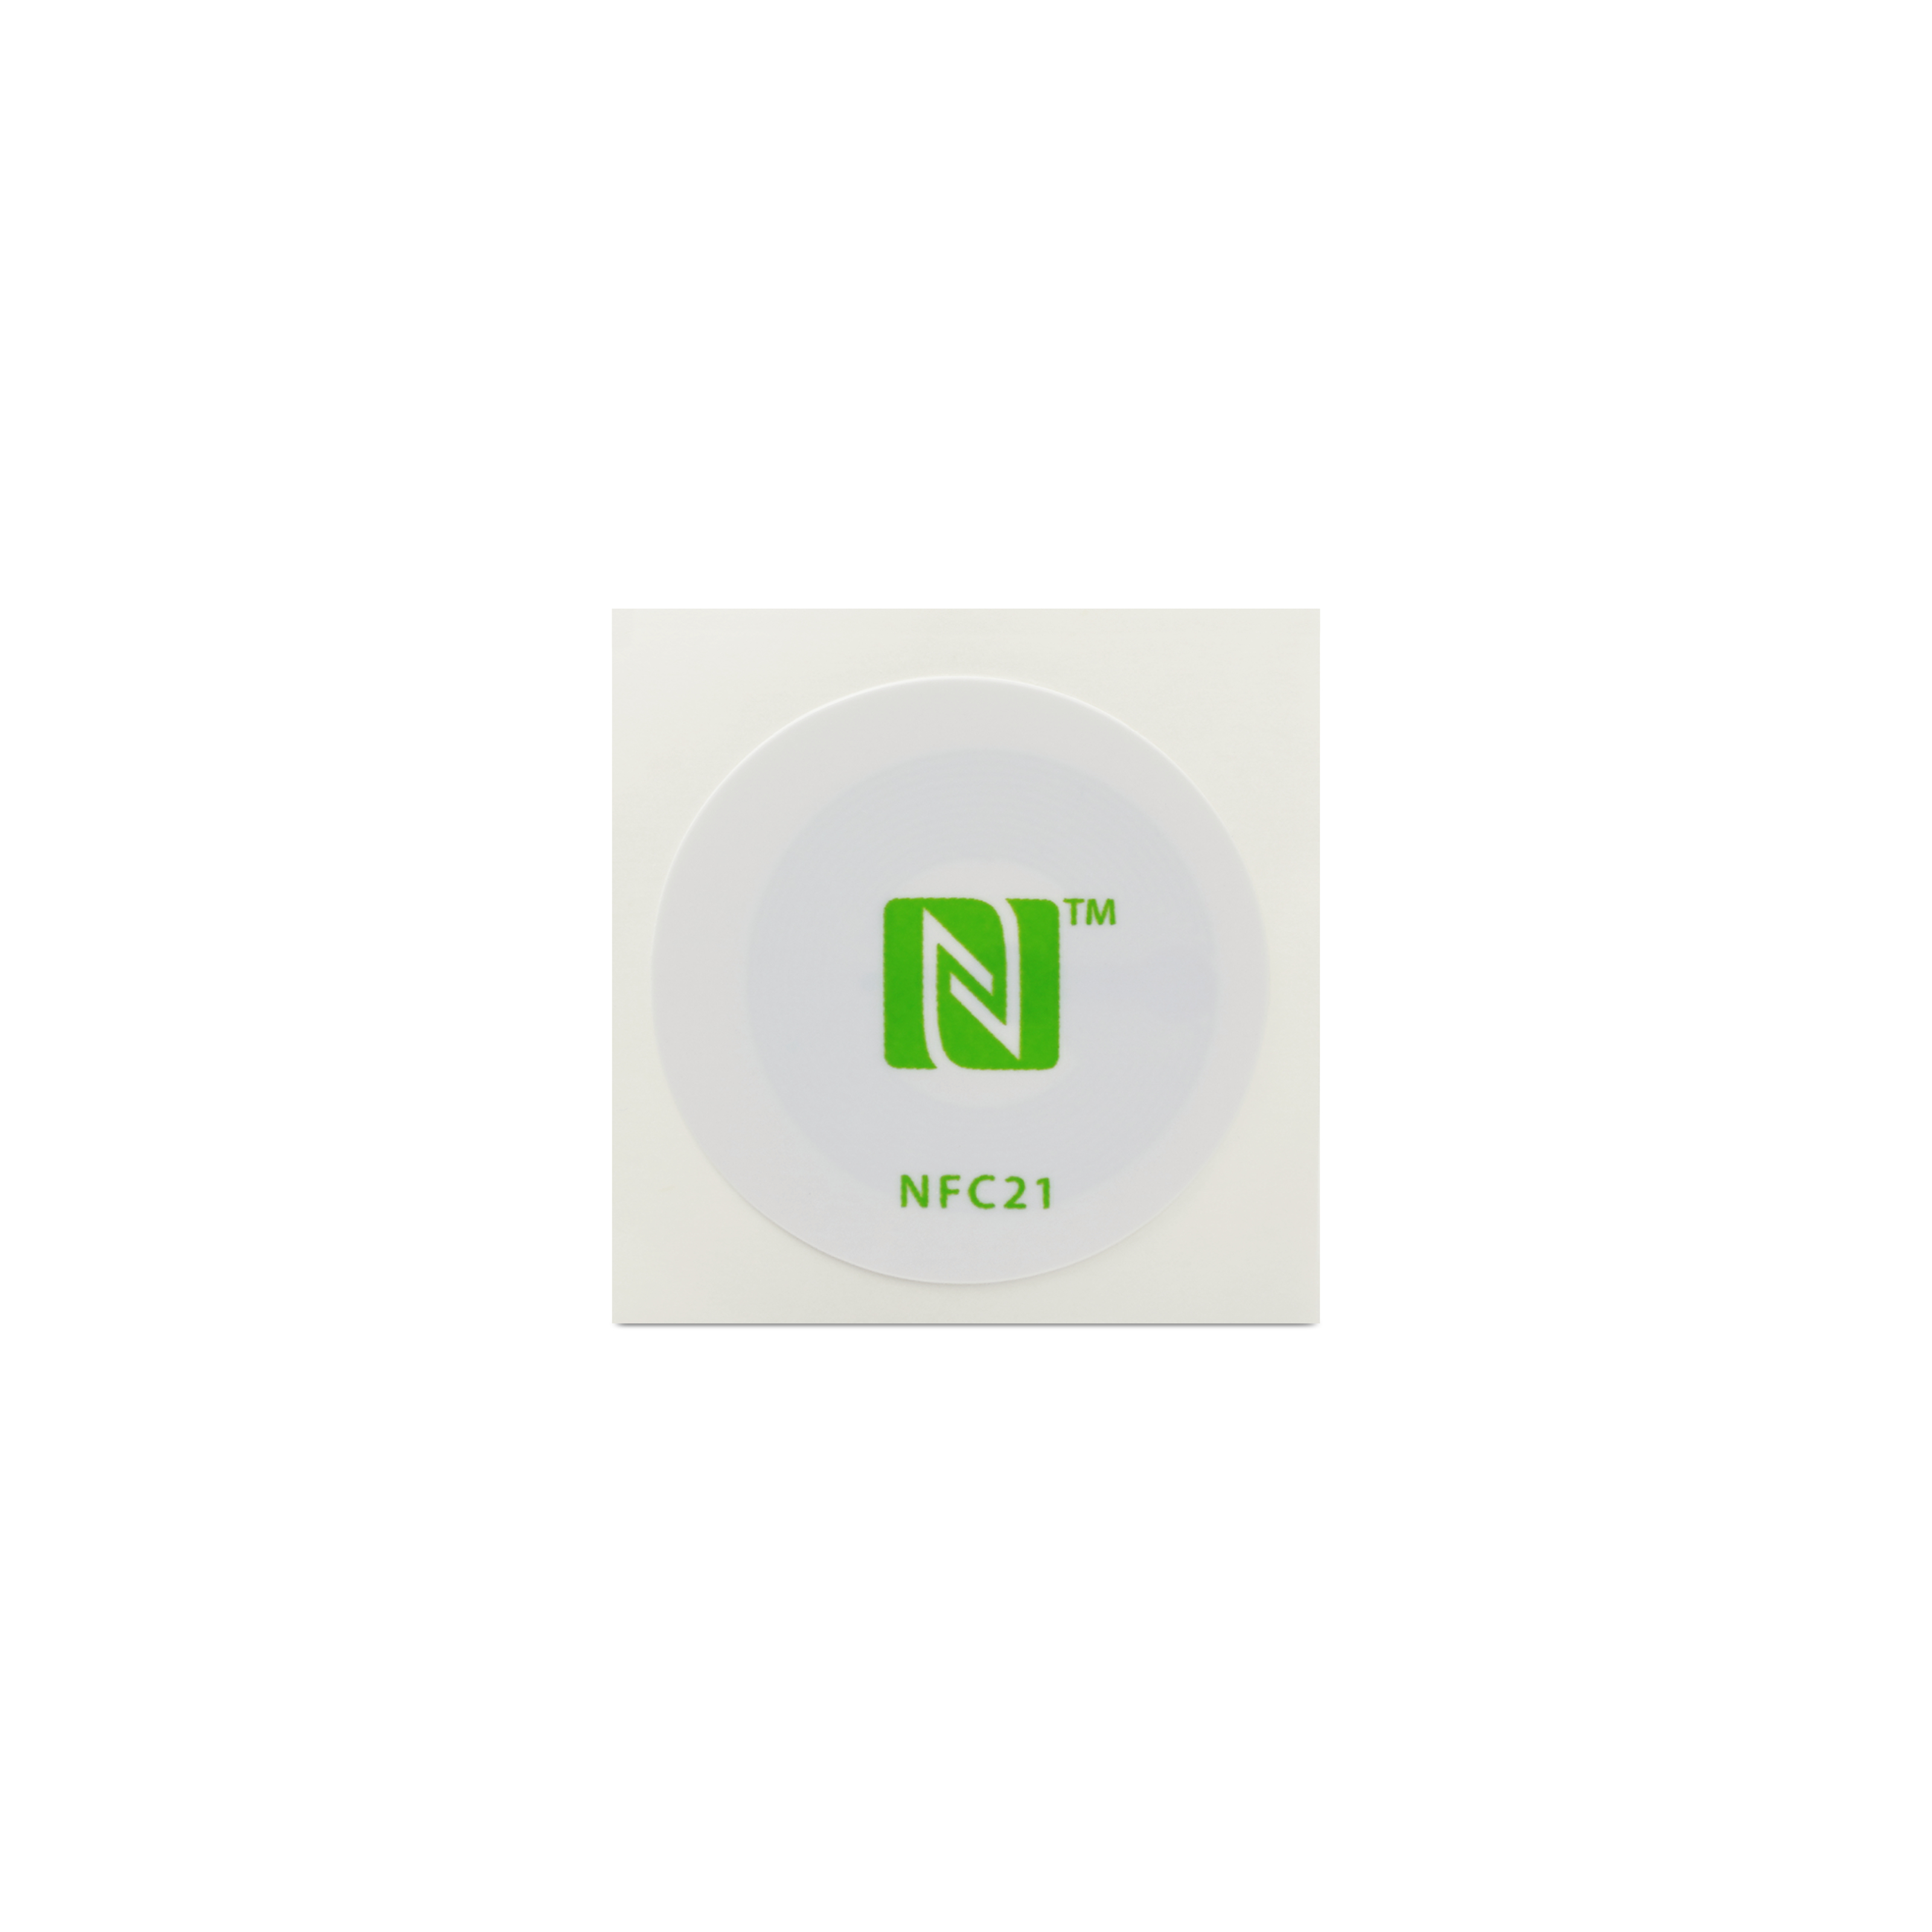 NFC Sticker PET - 30 mm - NTAG215 - 540 Byte - weiß mit Logo grün